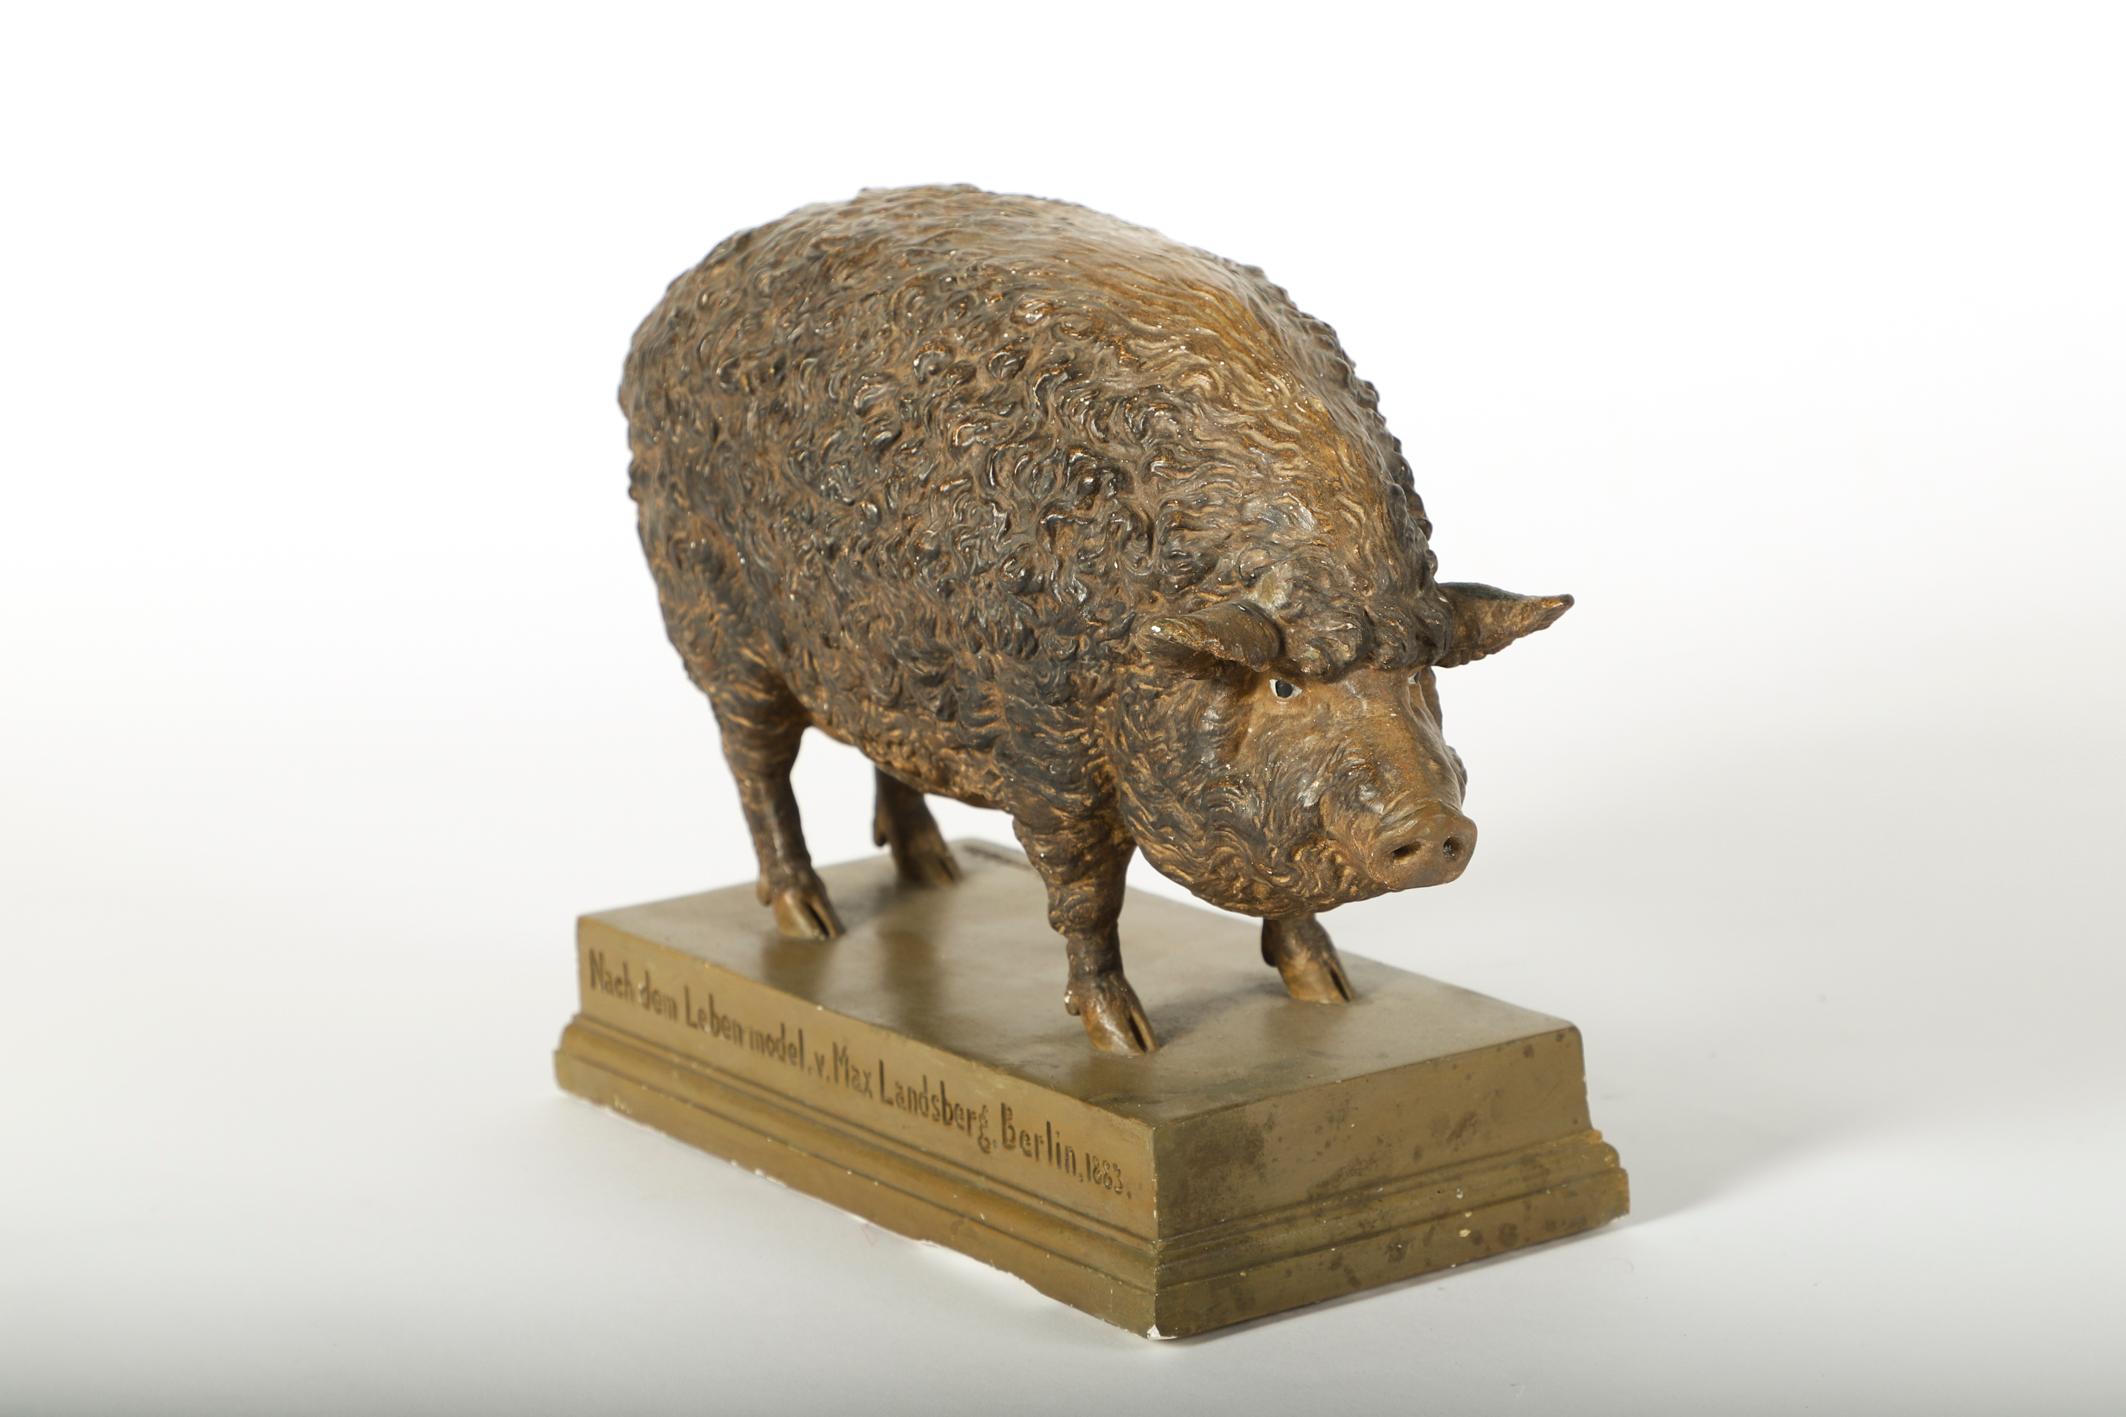 Berlin, Germany 1883, stamped: “Race-Typus des Mangalicza oder BaKonyer Schweines”, “1/4tel nat. Groesse